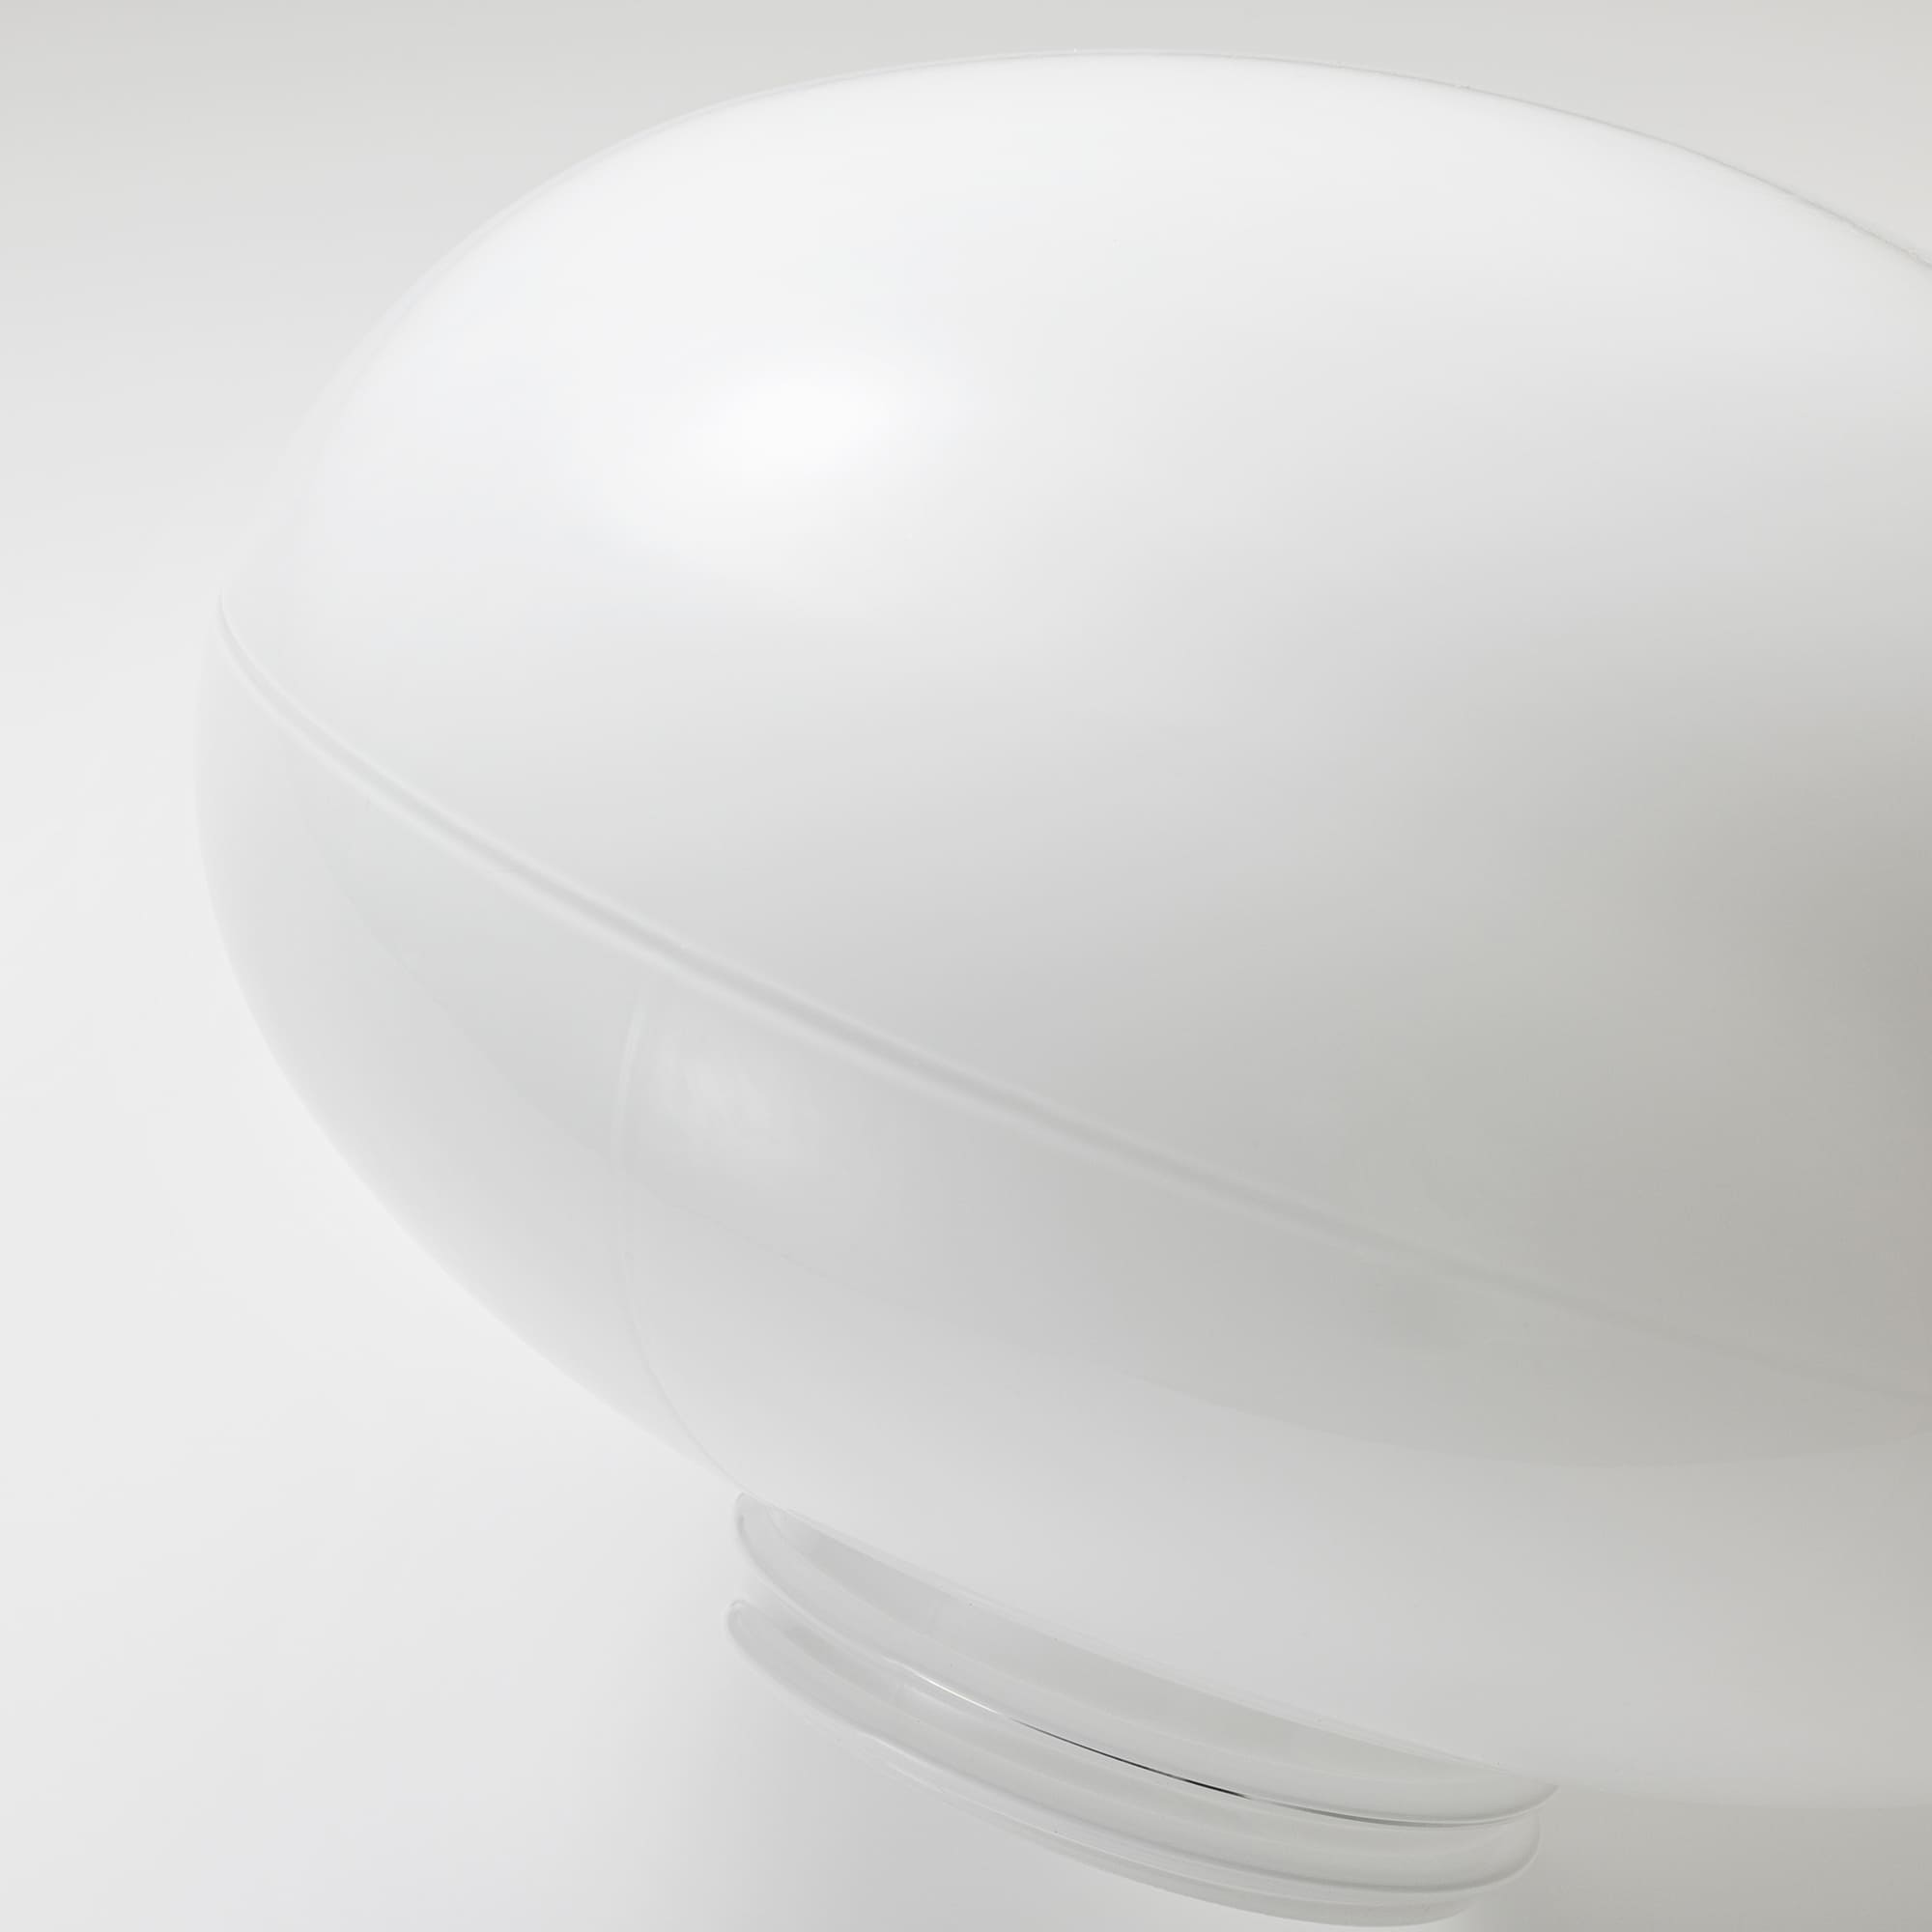 ミルクガラス照明 ホワイト 楕円 LT-BR005-06-G141 ガラスグローブには薄く接合時のラインができます